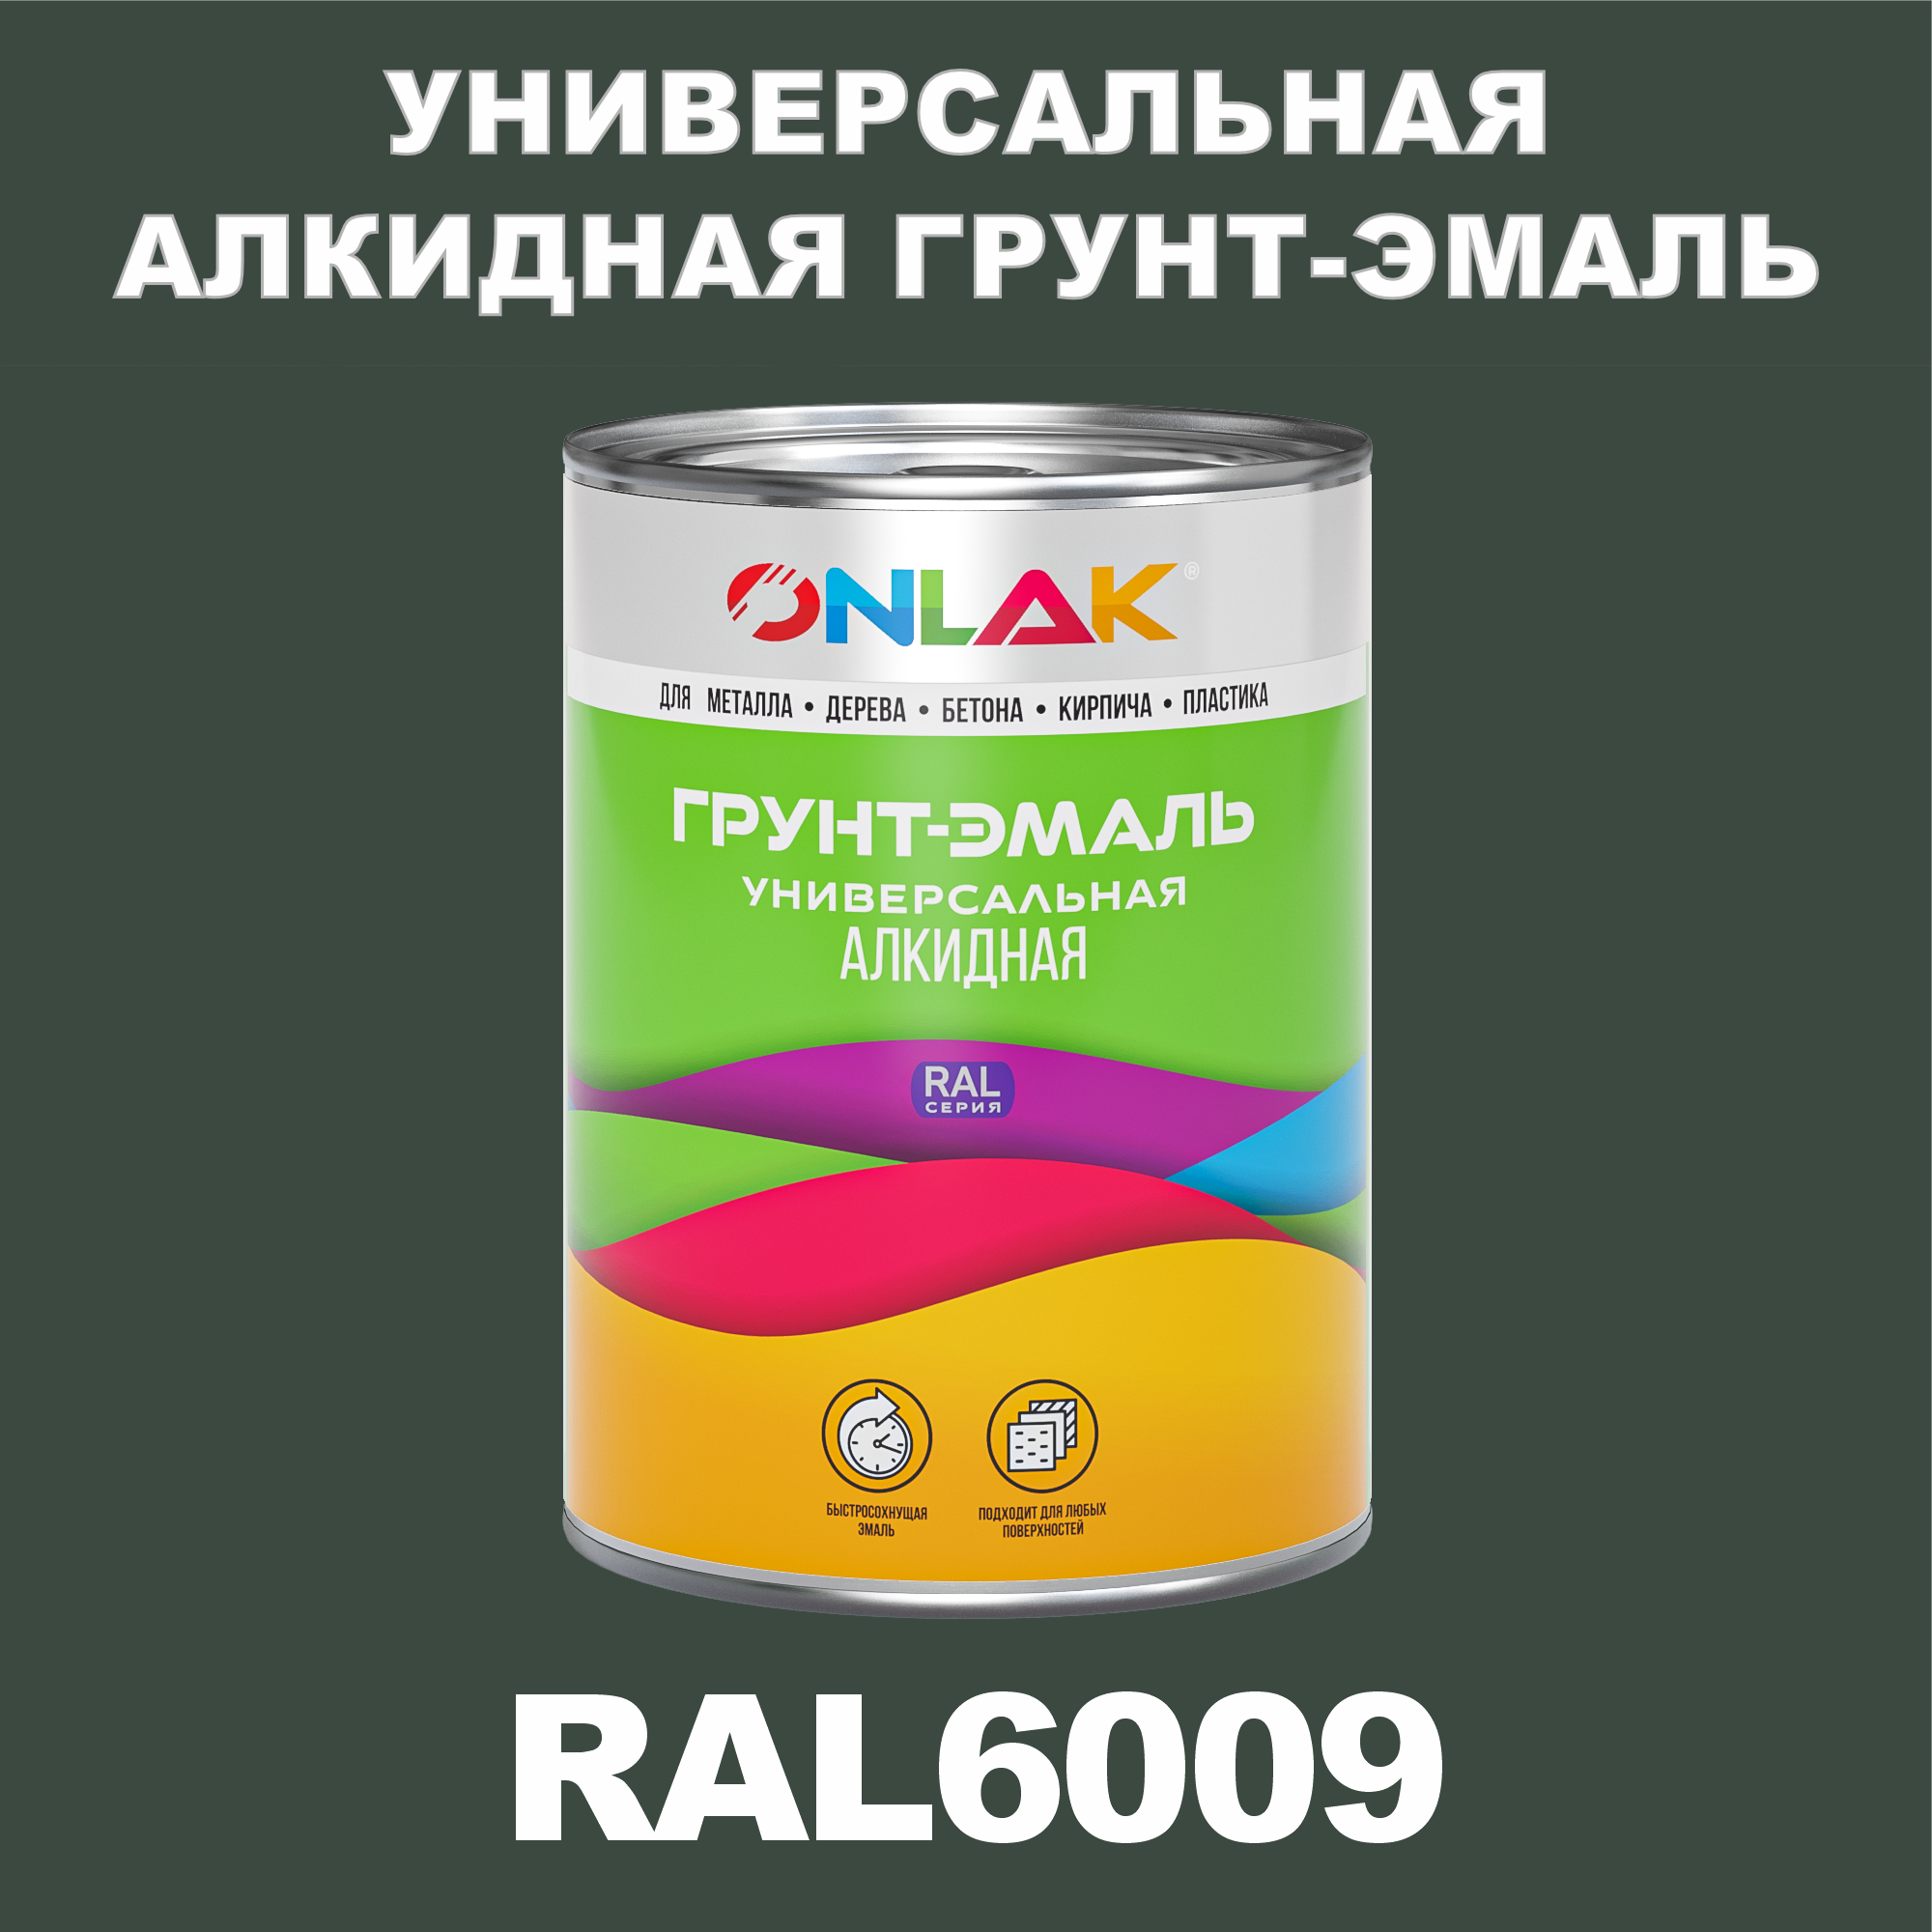 Грунт-эмаль ONLAK 1К RAL6009 антикоррозионная алкидная по металлу по ржавчине 1 кг грунт эмаль skladno по ржавчине алкидная желтая 1 8 кг